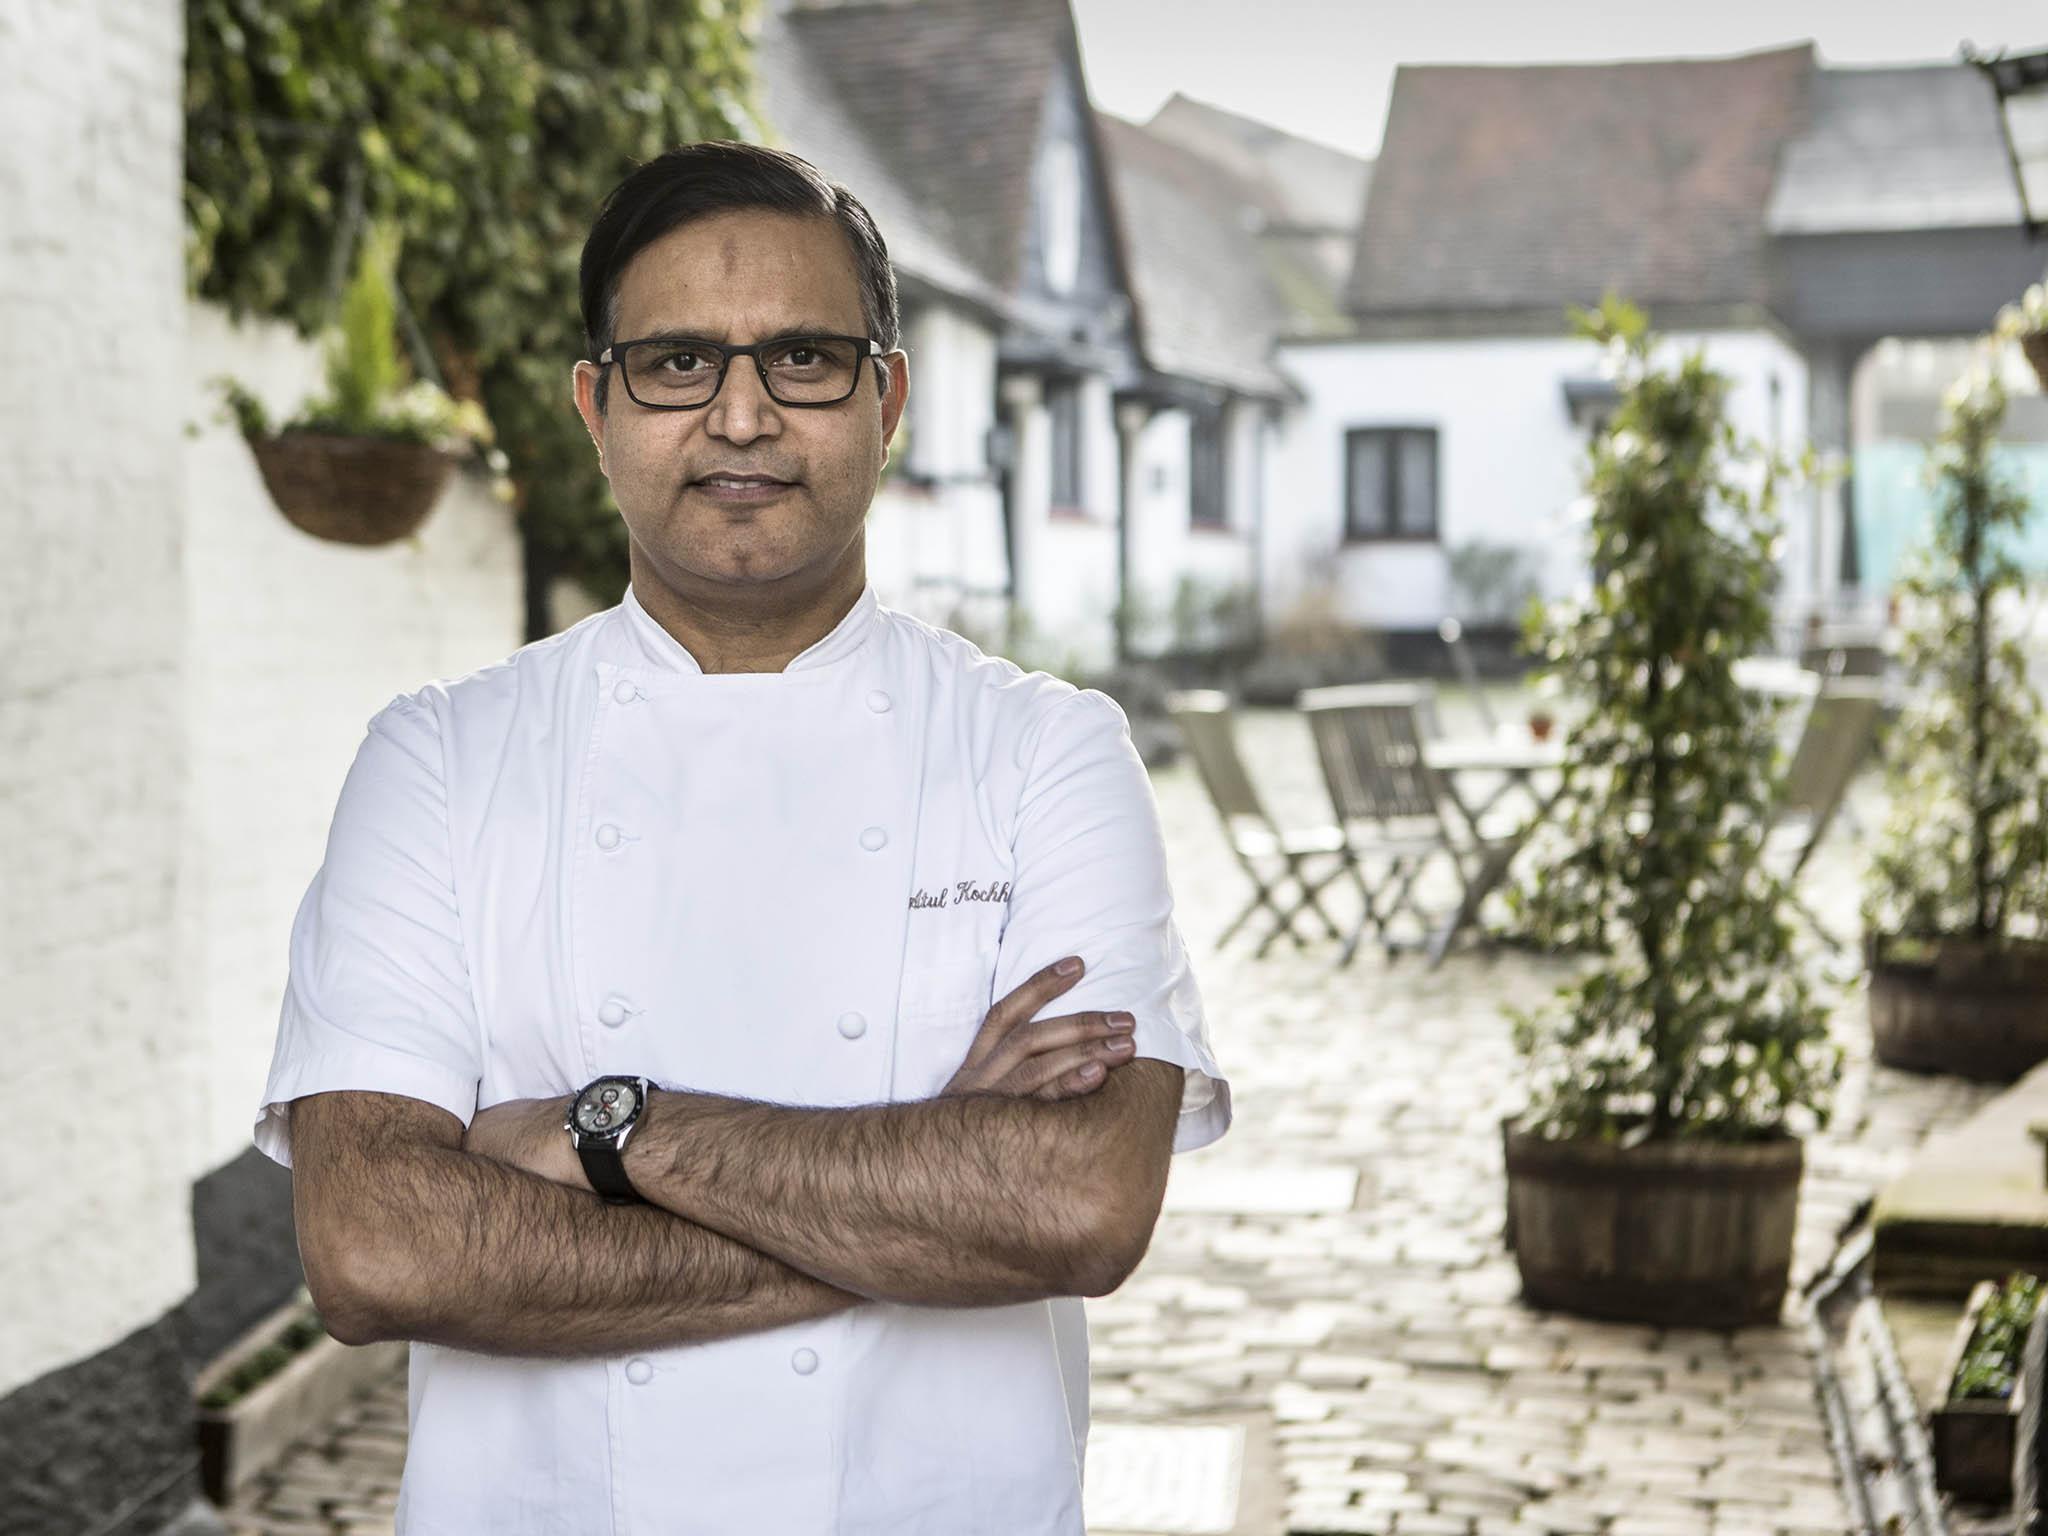 Atul Kochhar is the head chef